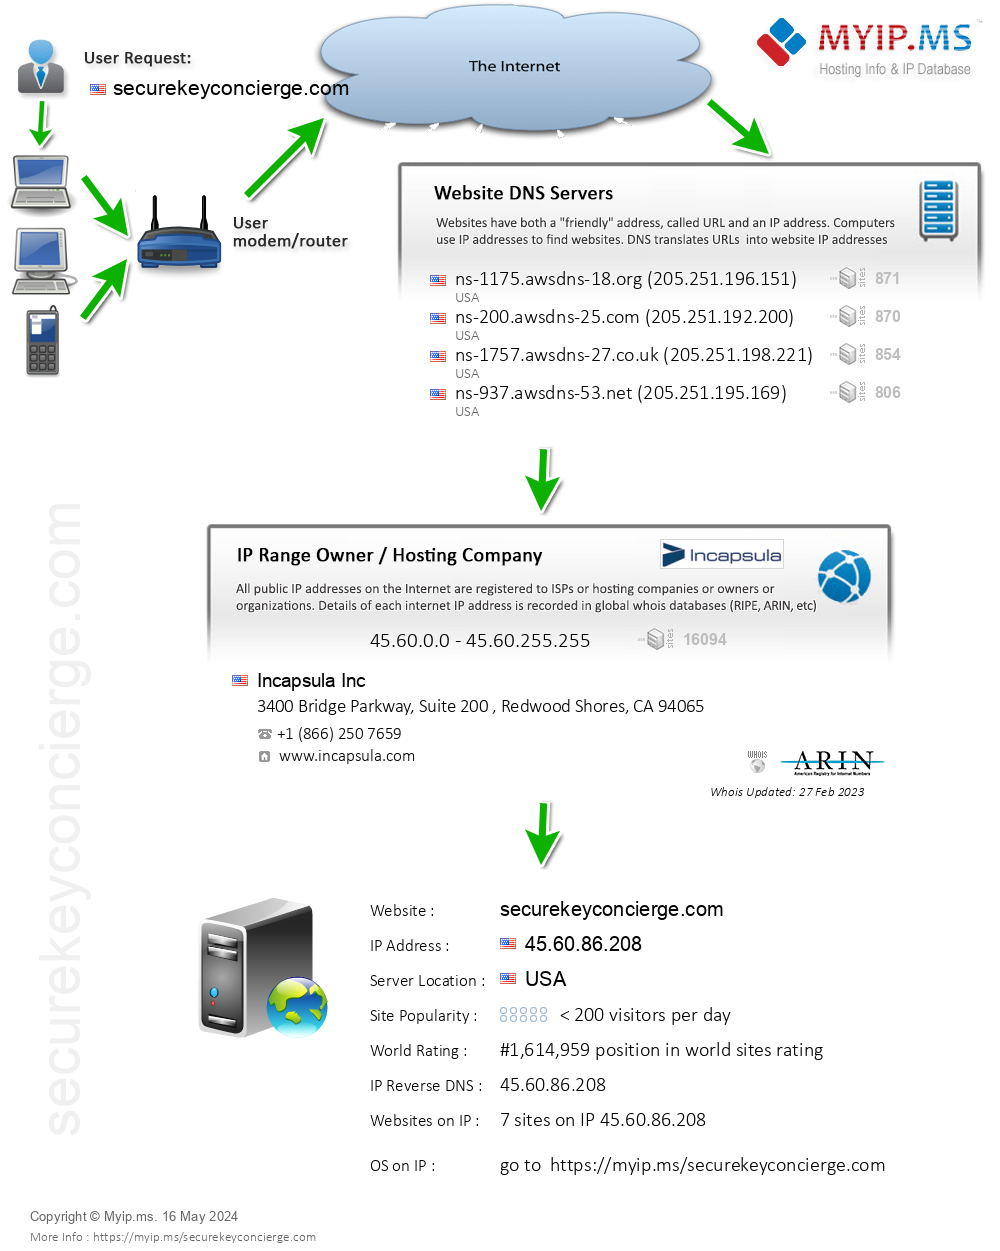 Securekeyconcierge.com - Website Hosting Visual IP Diagram